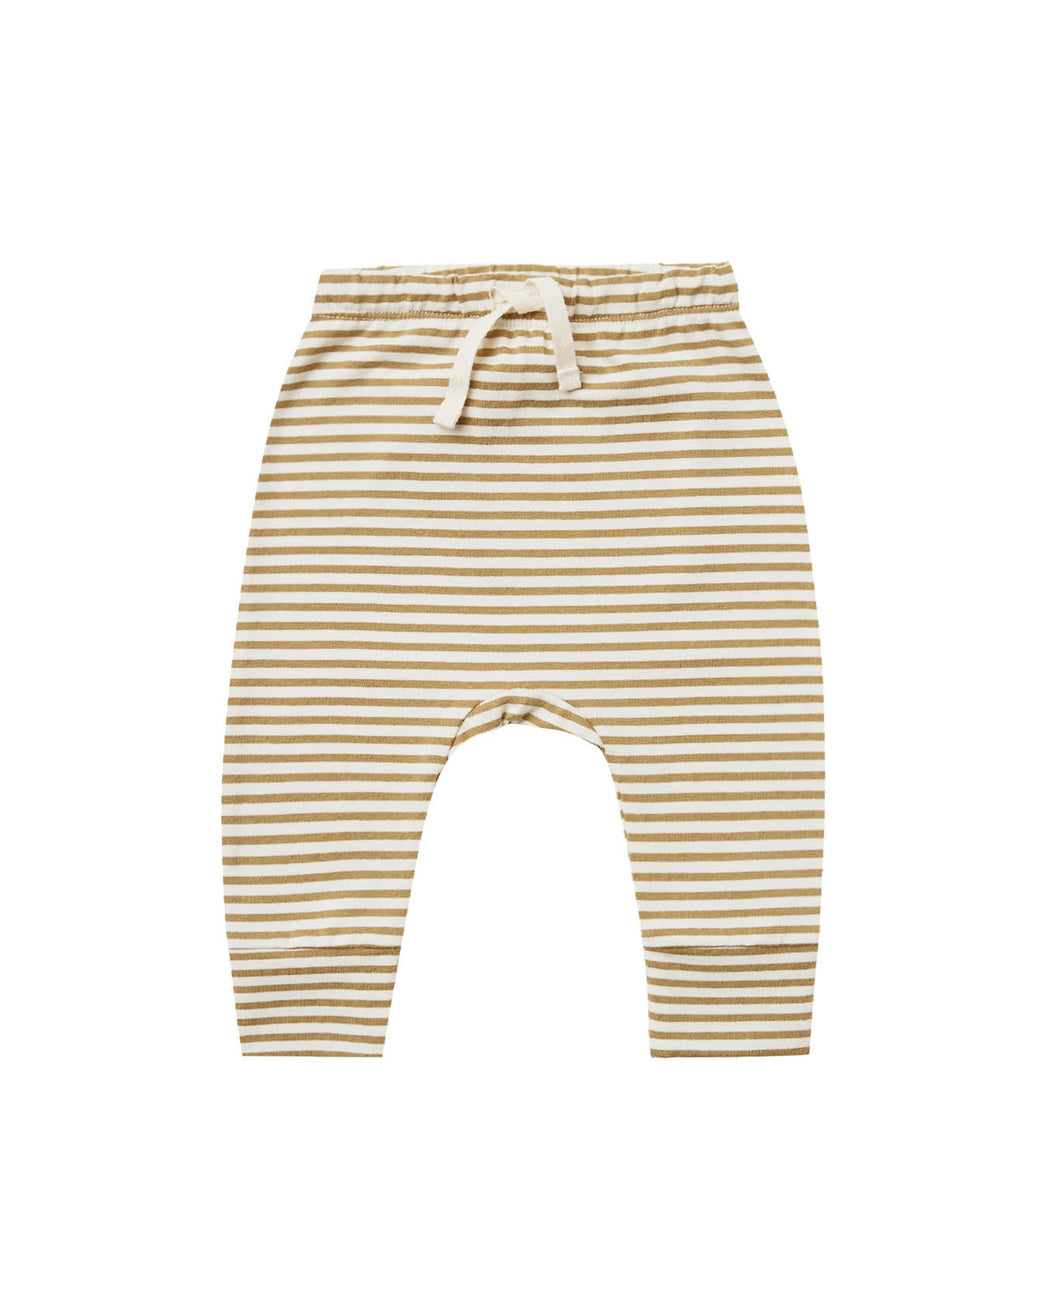 Drawstring Pant – Gold Stripe